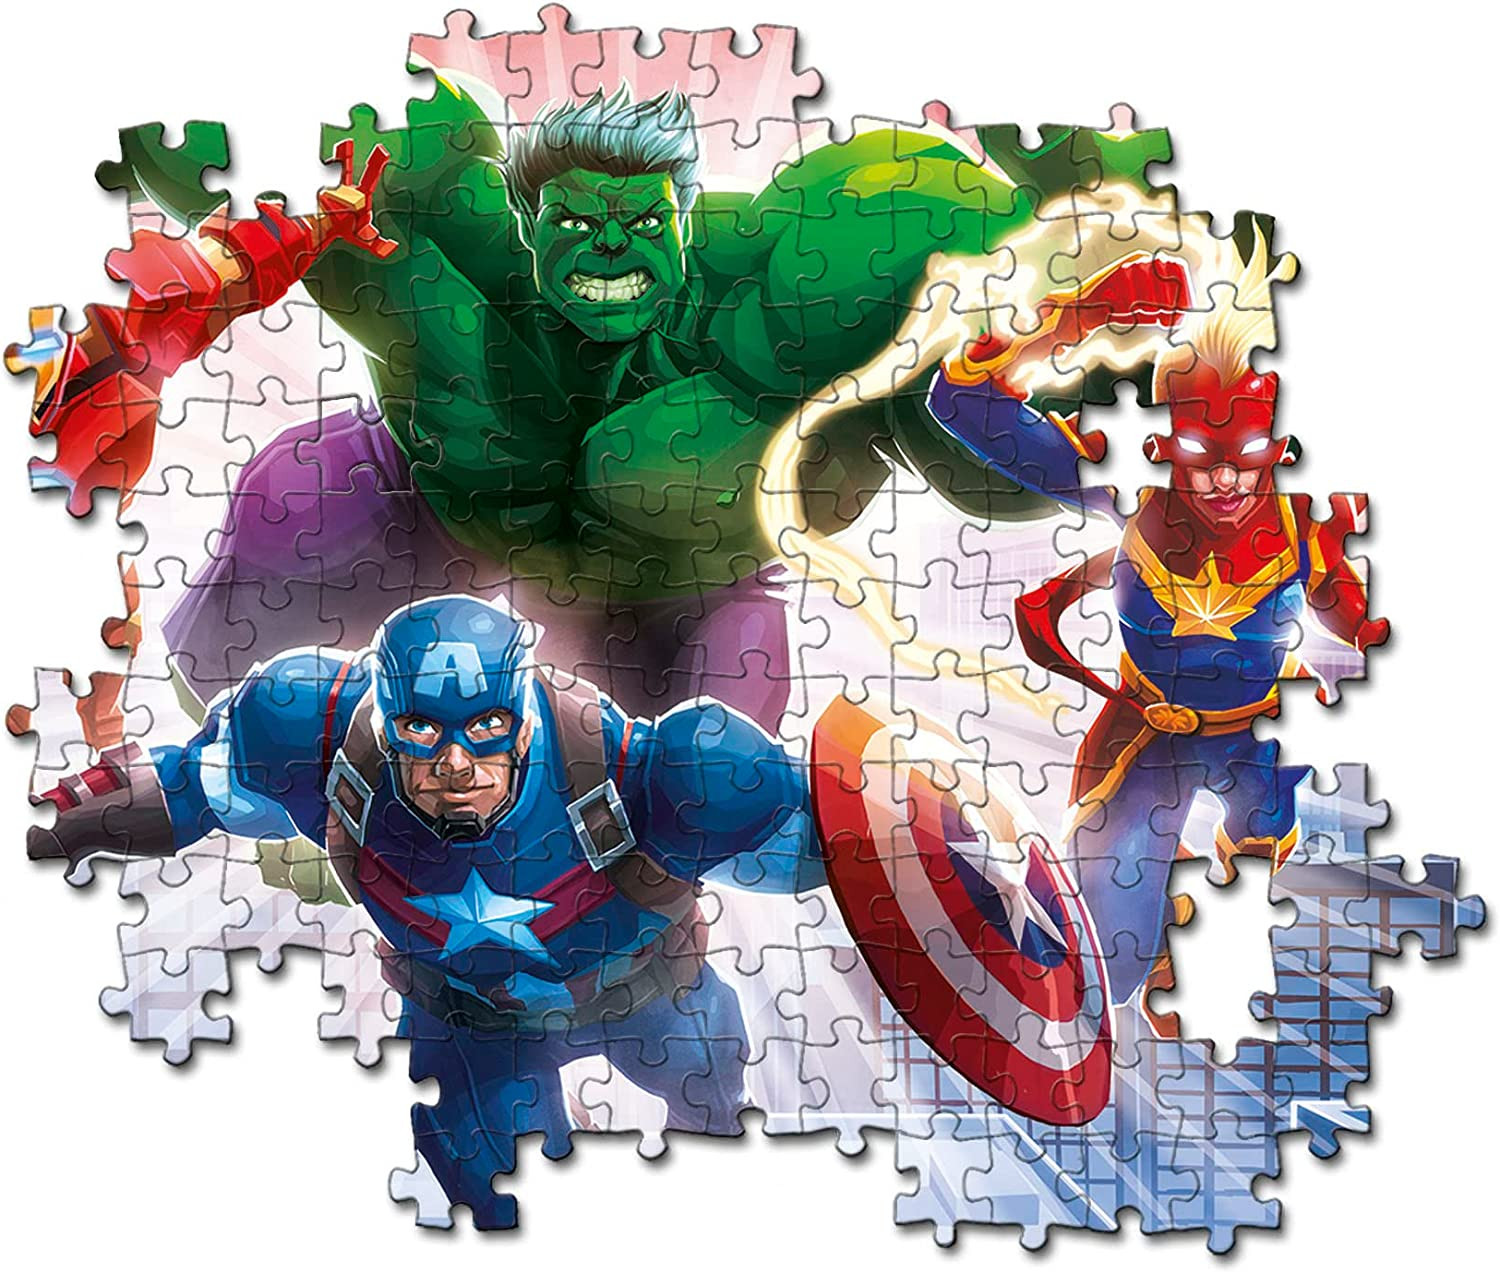 Wolk Handschrift Mening Clementoni-Marvel Avengers gloeiende lichten verzameling Avengers-104  stukken, 6 jaar oud, fluorescerende puzzel-evil in Italië, 27554,  multicolor Beschadigde Verpakking